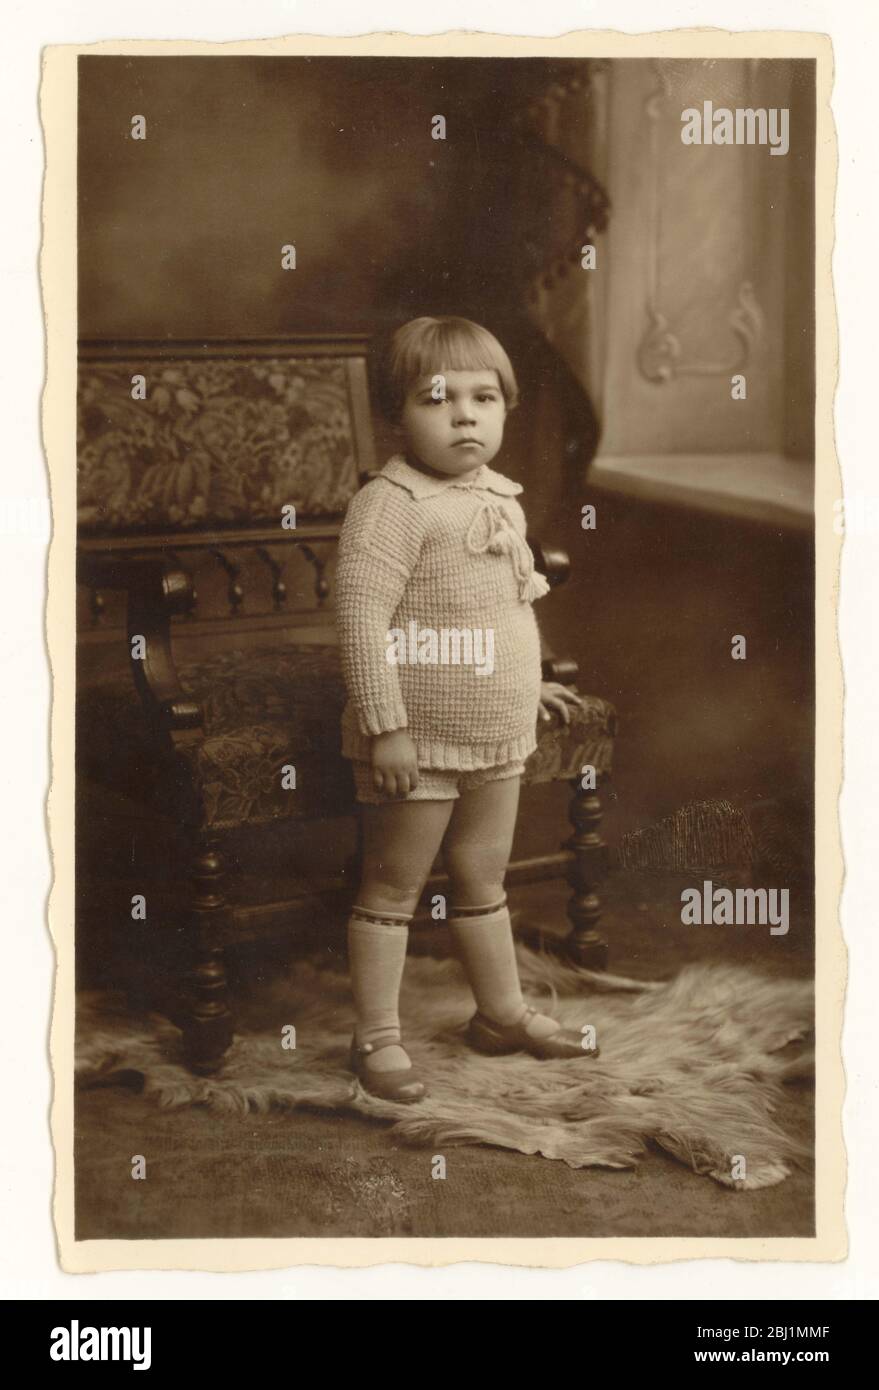 Photo du début des années 1900 d'un garçon de l'âge de 21/2 ans avec une coupe de cheveux de bob à la mode à l'époque, vers 1925. ROYAUME-UNI Banque D'Images